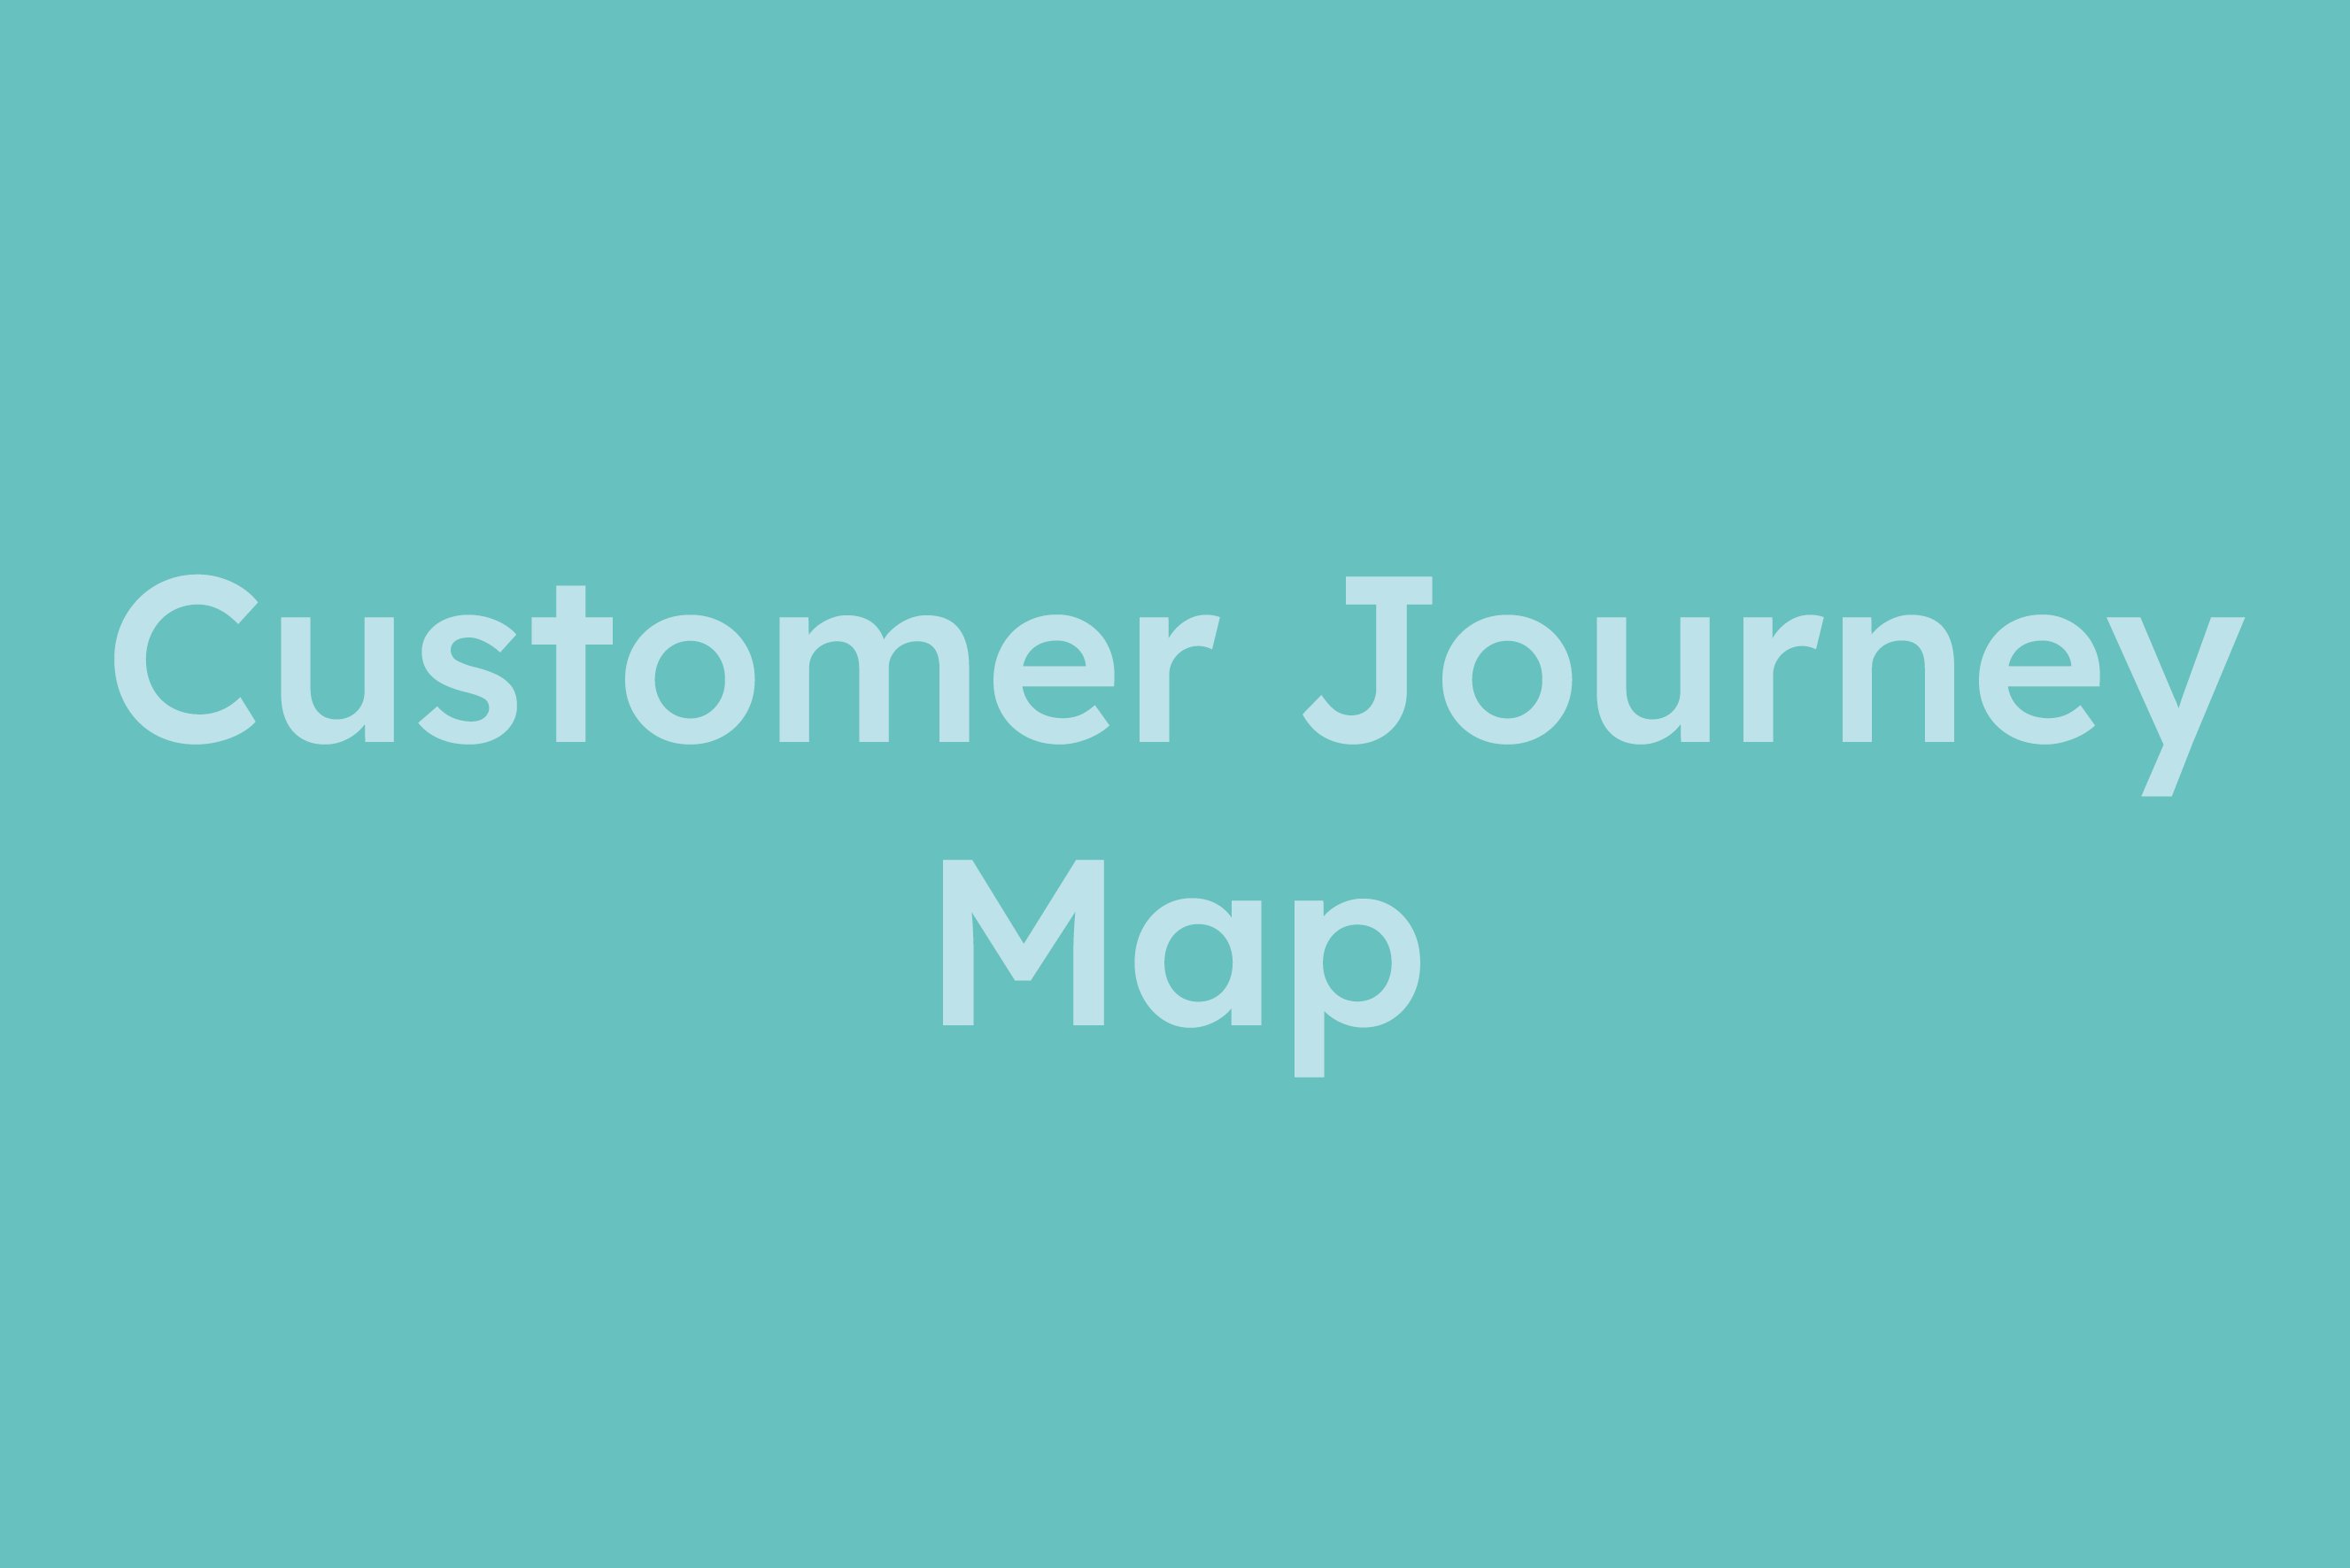 Customer Journey Map erklärt im Glossar von Campaign